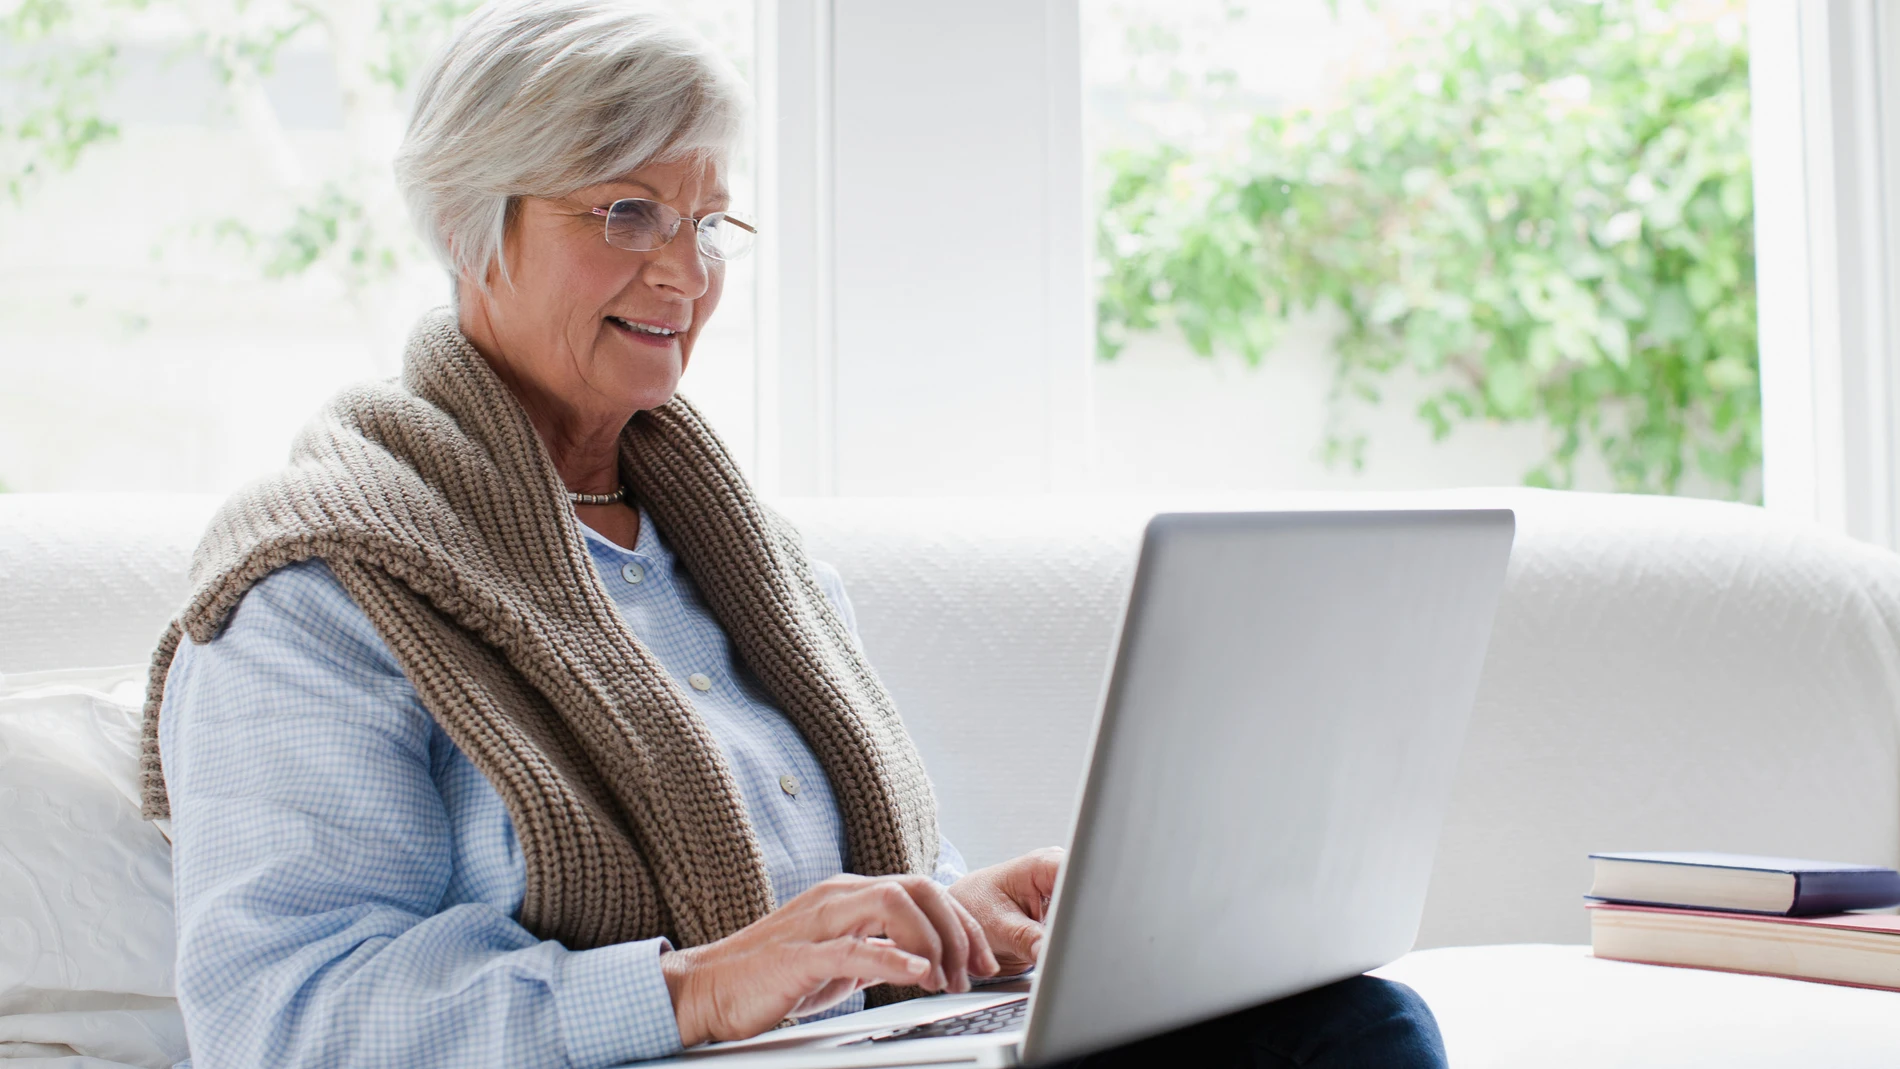 Las personas mayores suelen ser las más olvidadas en la era digital.